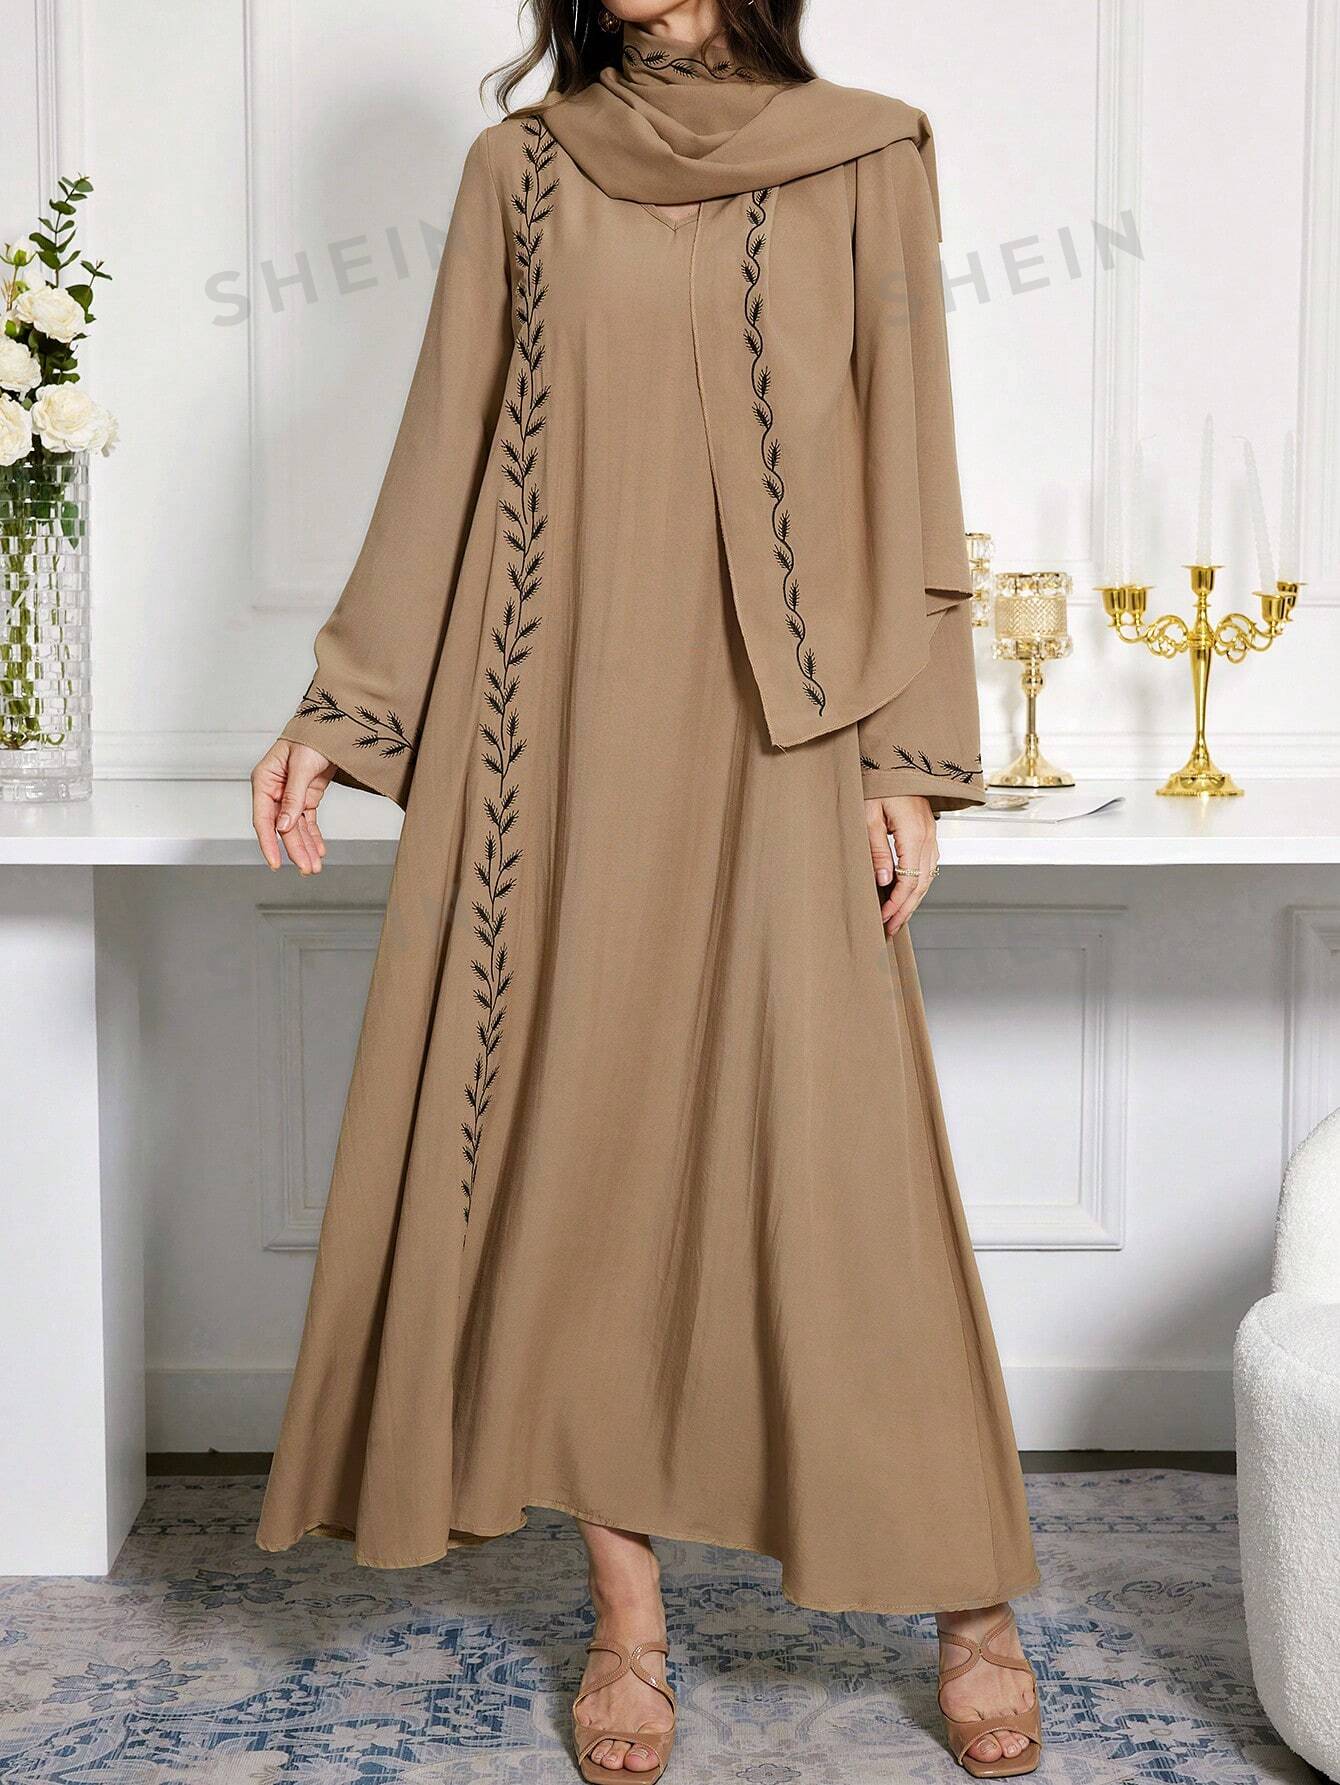 женское платье среднего востока мусульманское платье с капюшоном и бриллиантами платье в арабском стиле юго восточная азия весенняя мод SHEIN Najma женское платье в арабском стиле с v-образным вырезом и вышивкой, коричневый